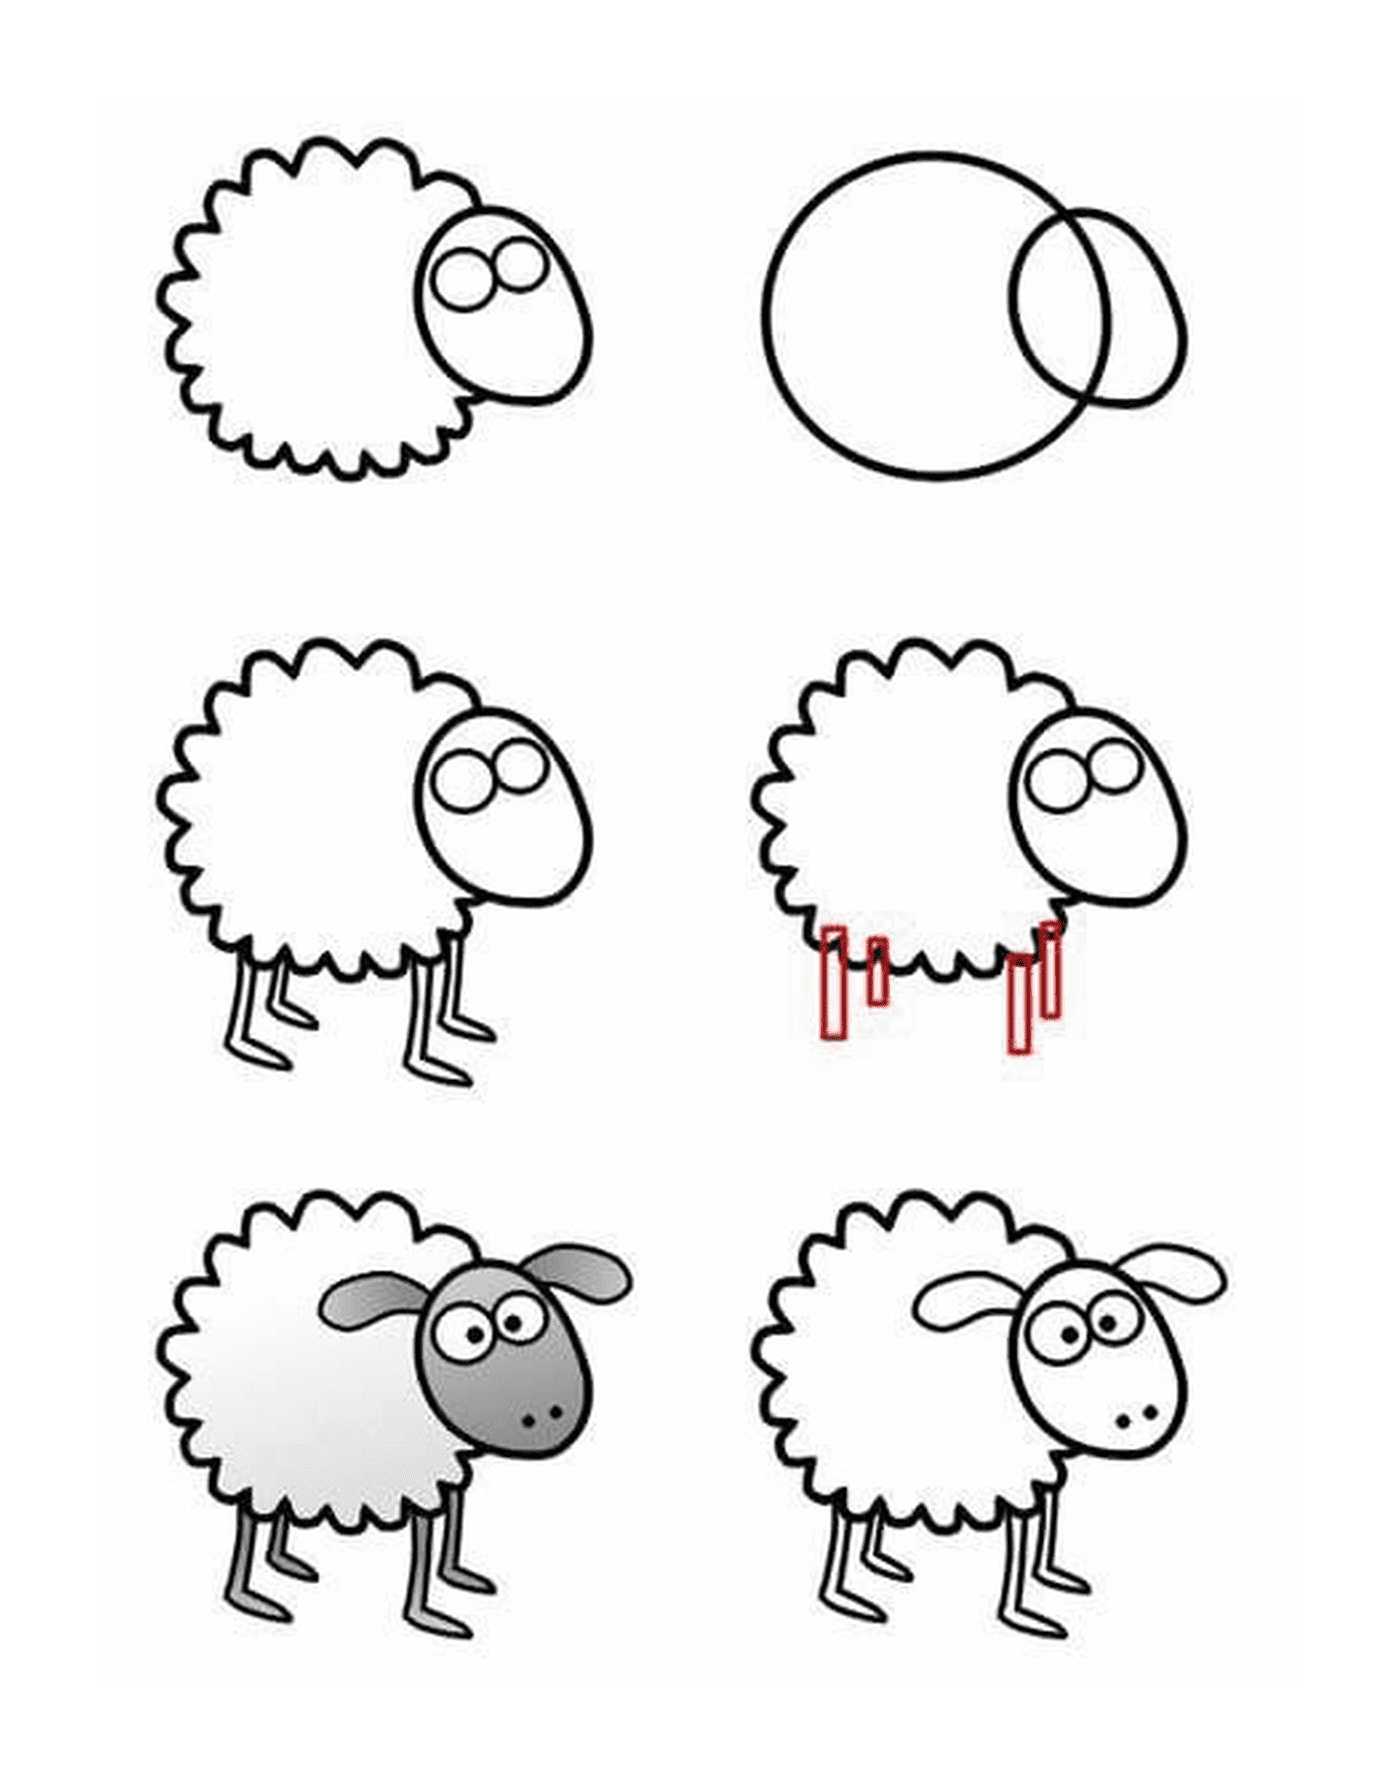  Cómo dibujar una oveja paso a paso 